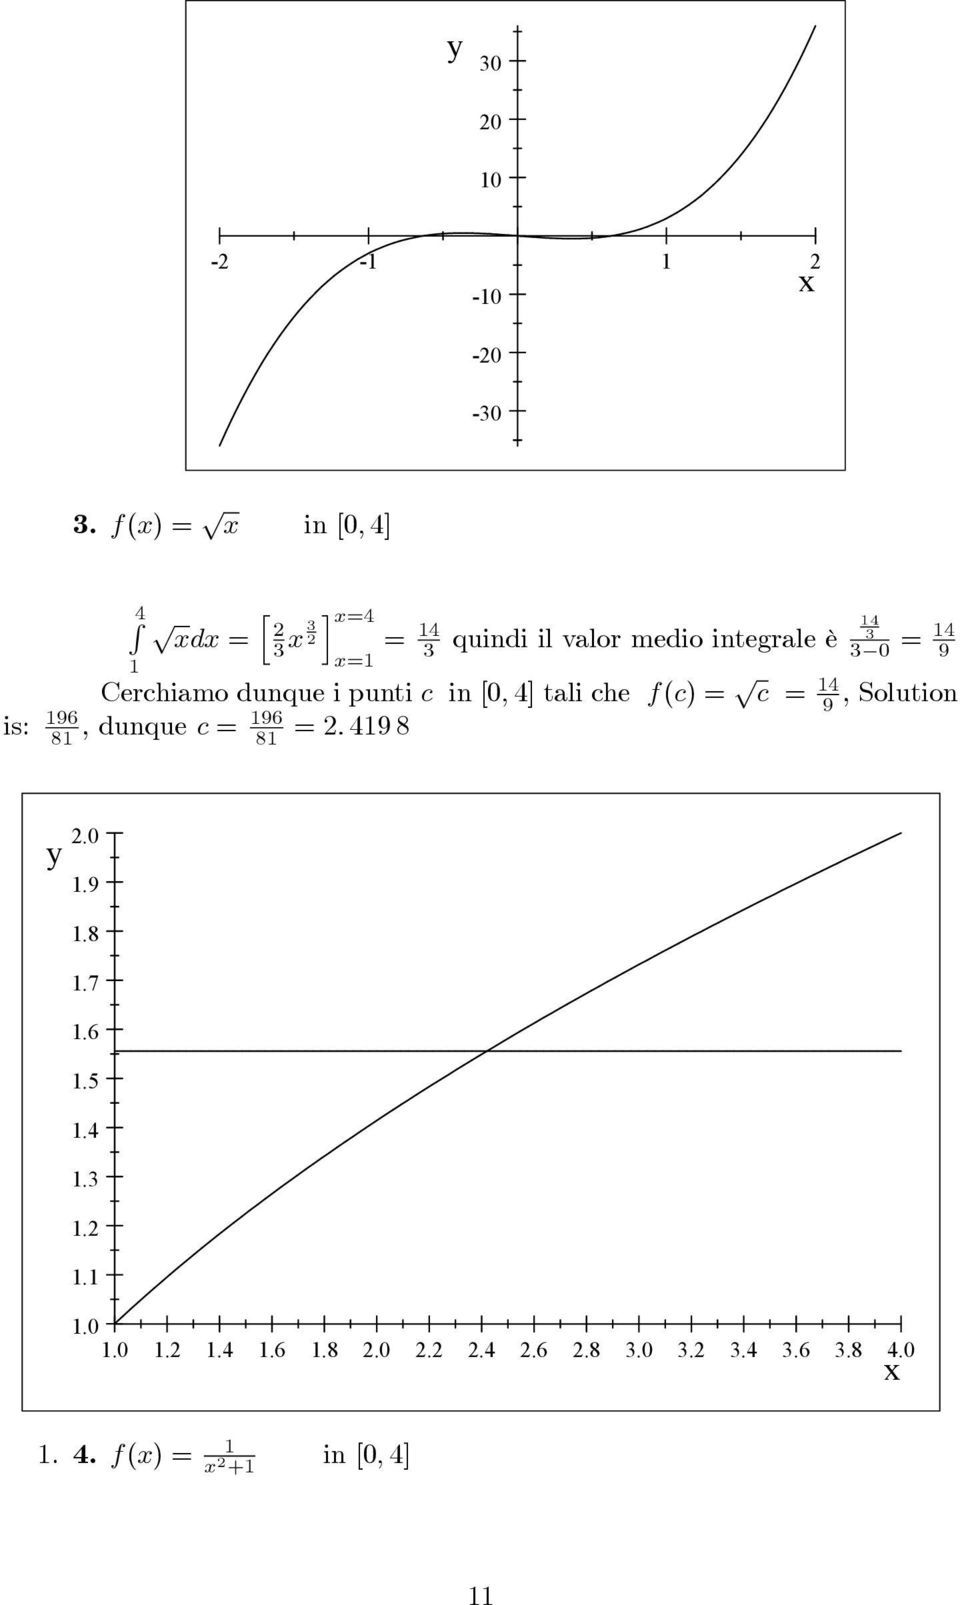 [; ] tli che f(c) = p c = 9, Solution, dunque c = 96 8 =